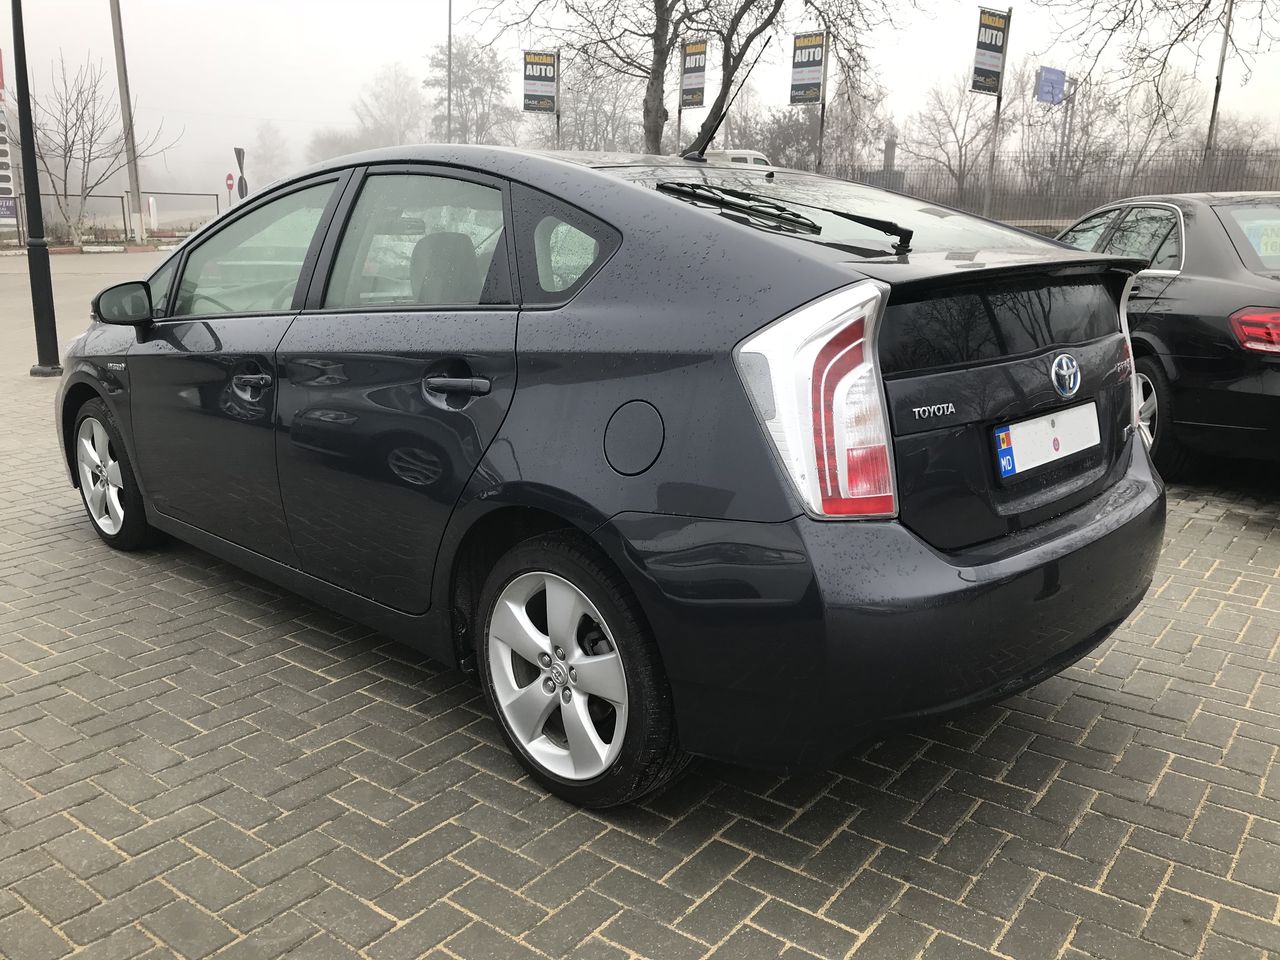 Toyota Prius - Car for Rent Chisinau, Moldova2